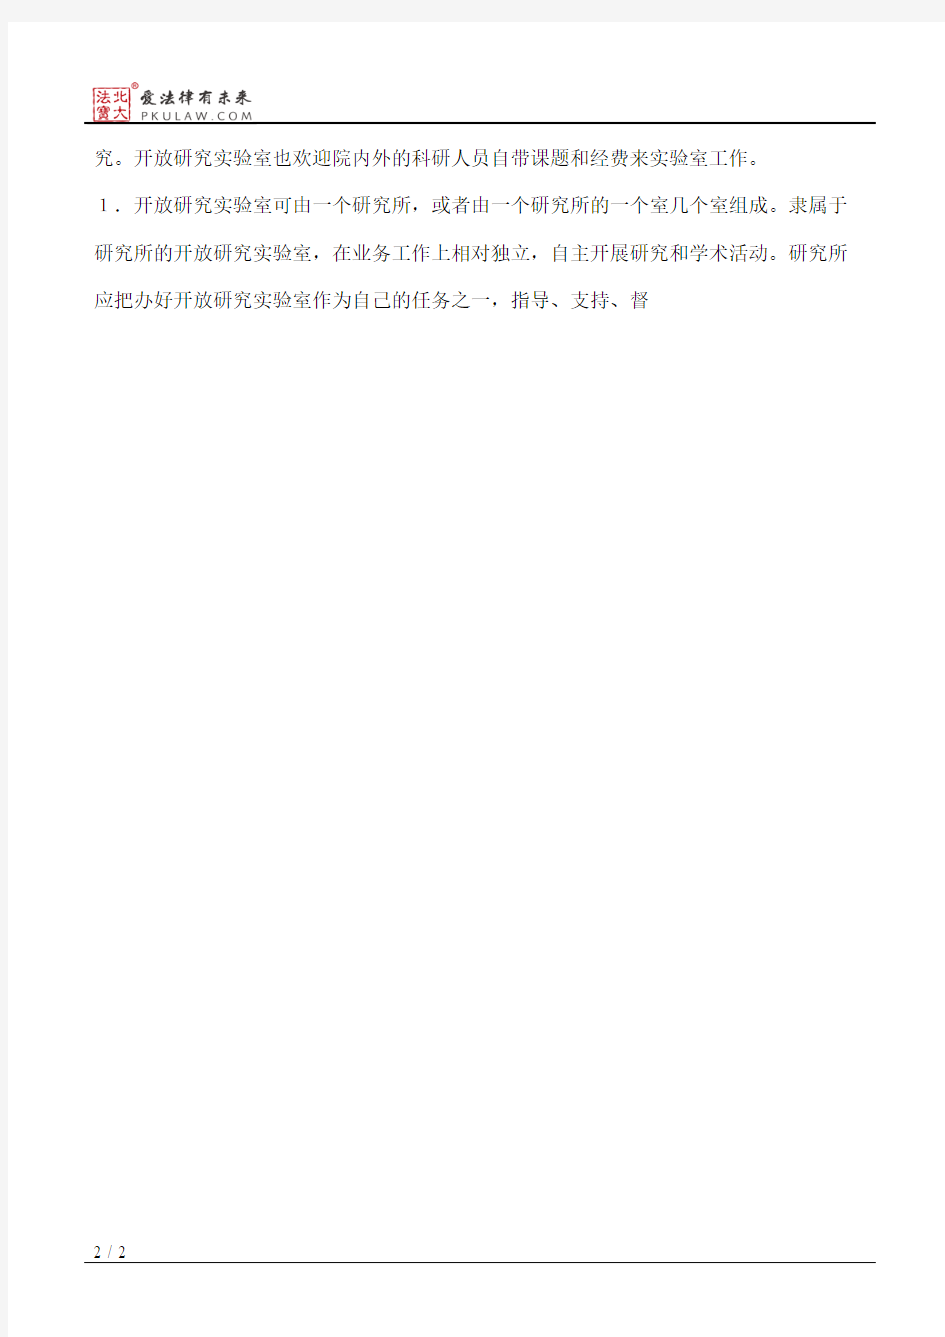 中国科学院开放研究实验室暂行管理办法